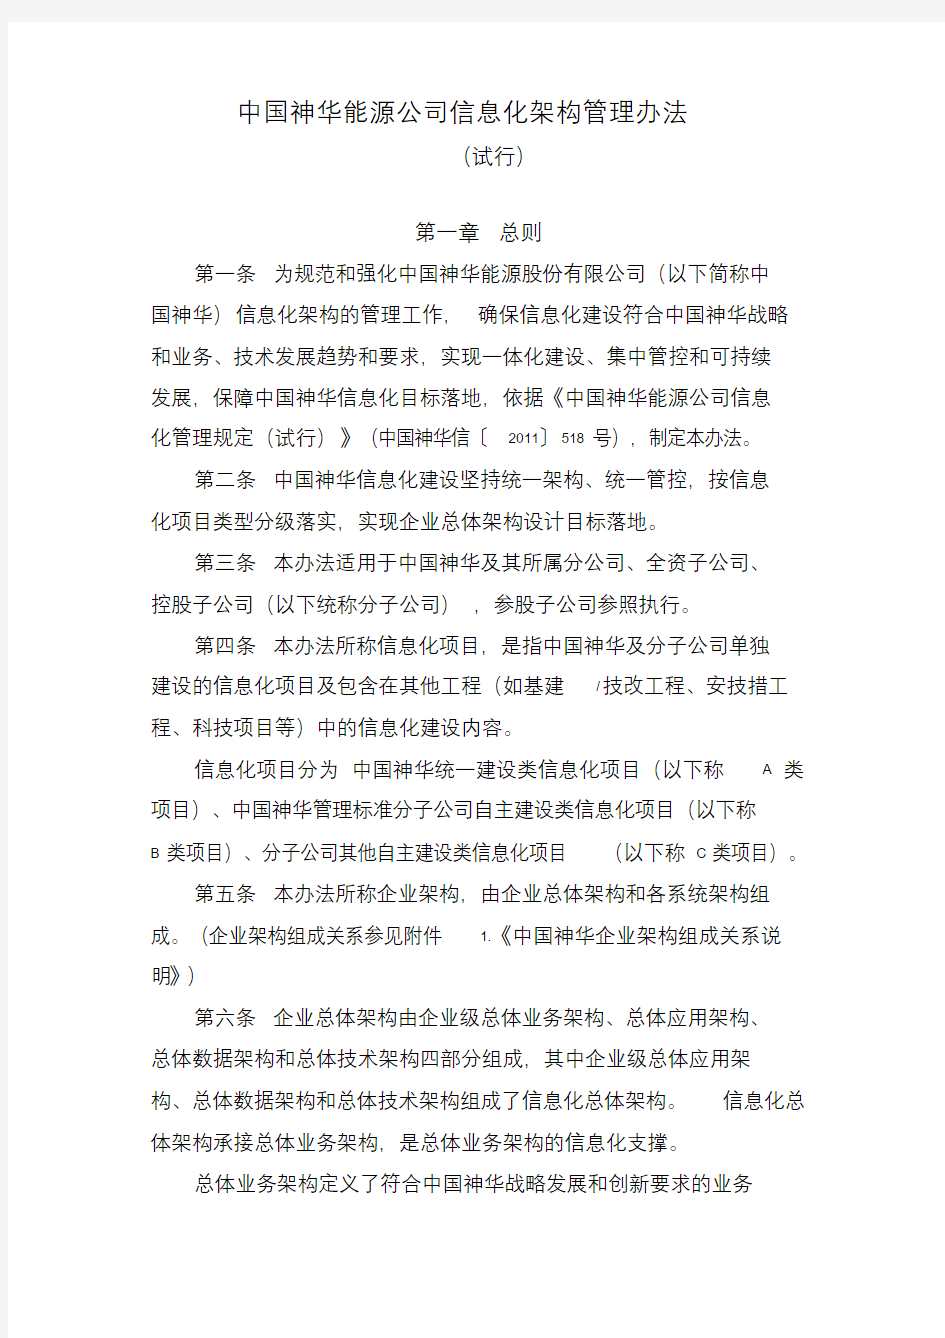 中国神华能源公司信息化架构管理办法